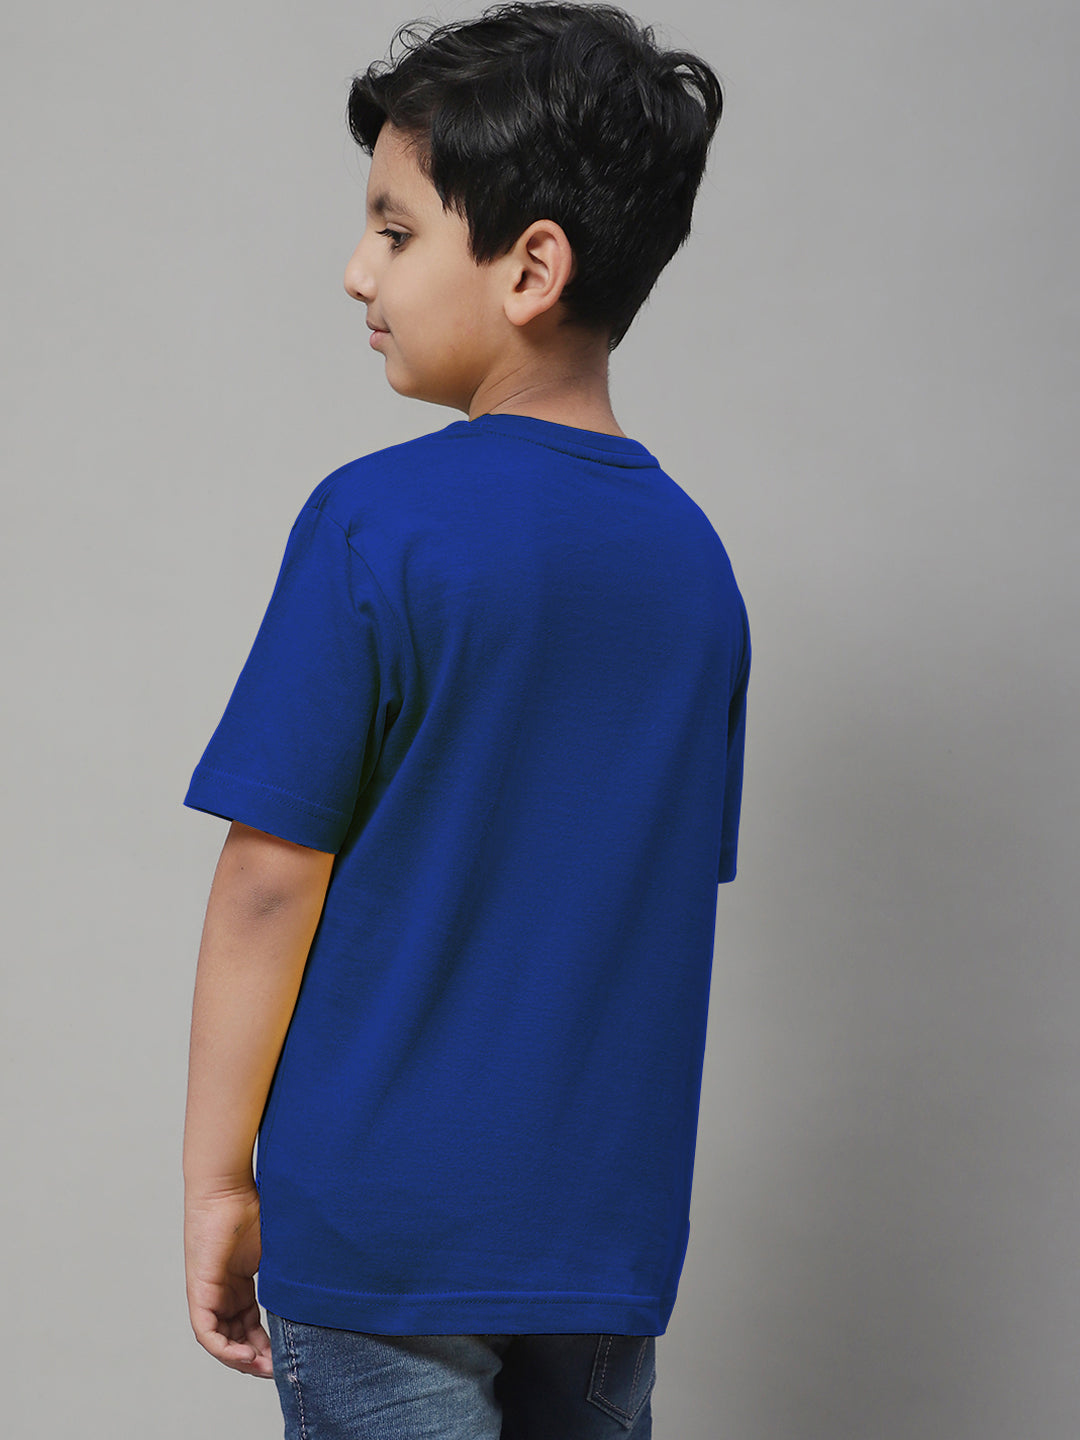 Boys Lion Regular Fit Printed T-Shirt - Friskers